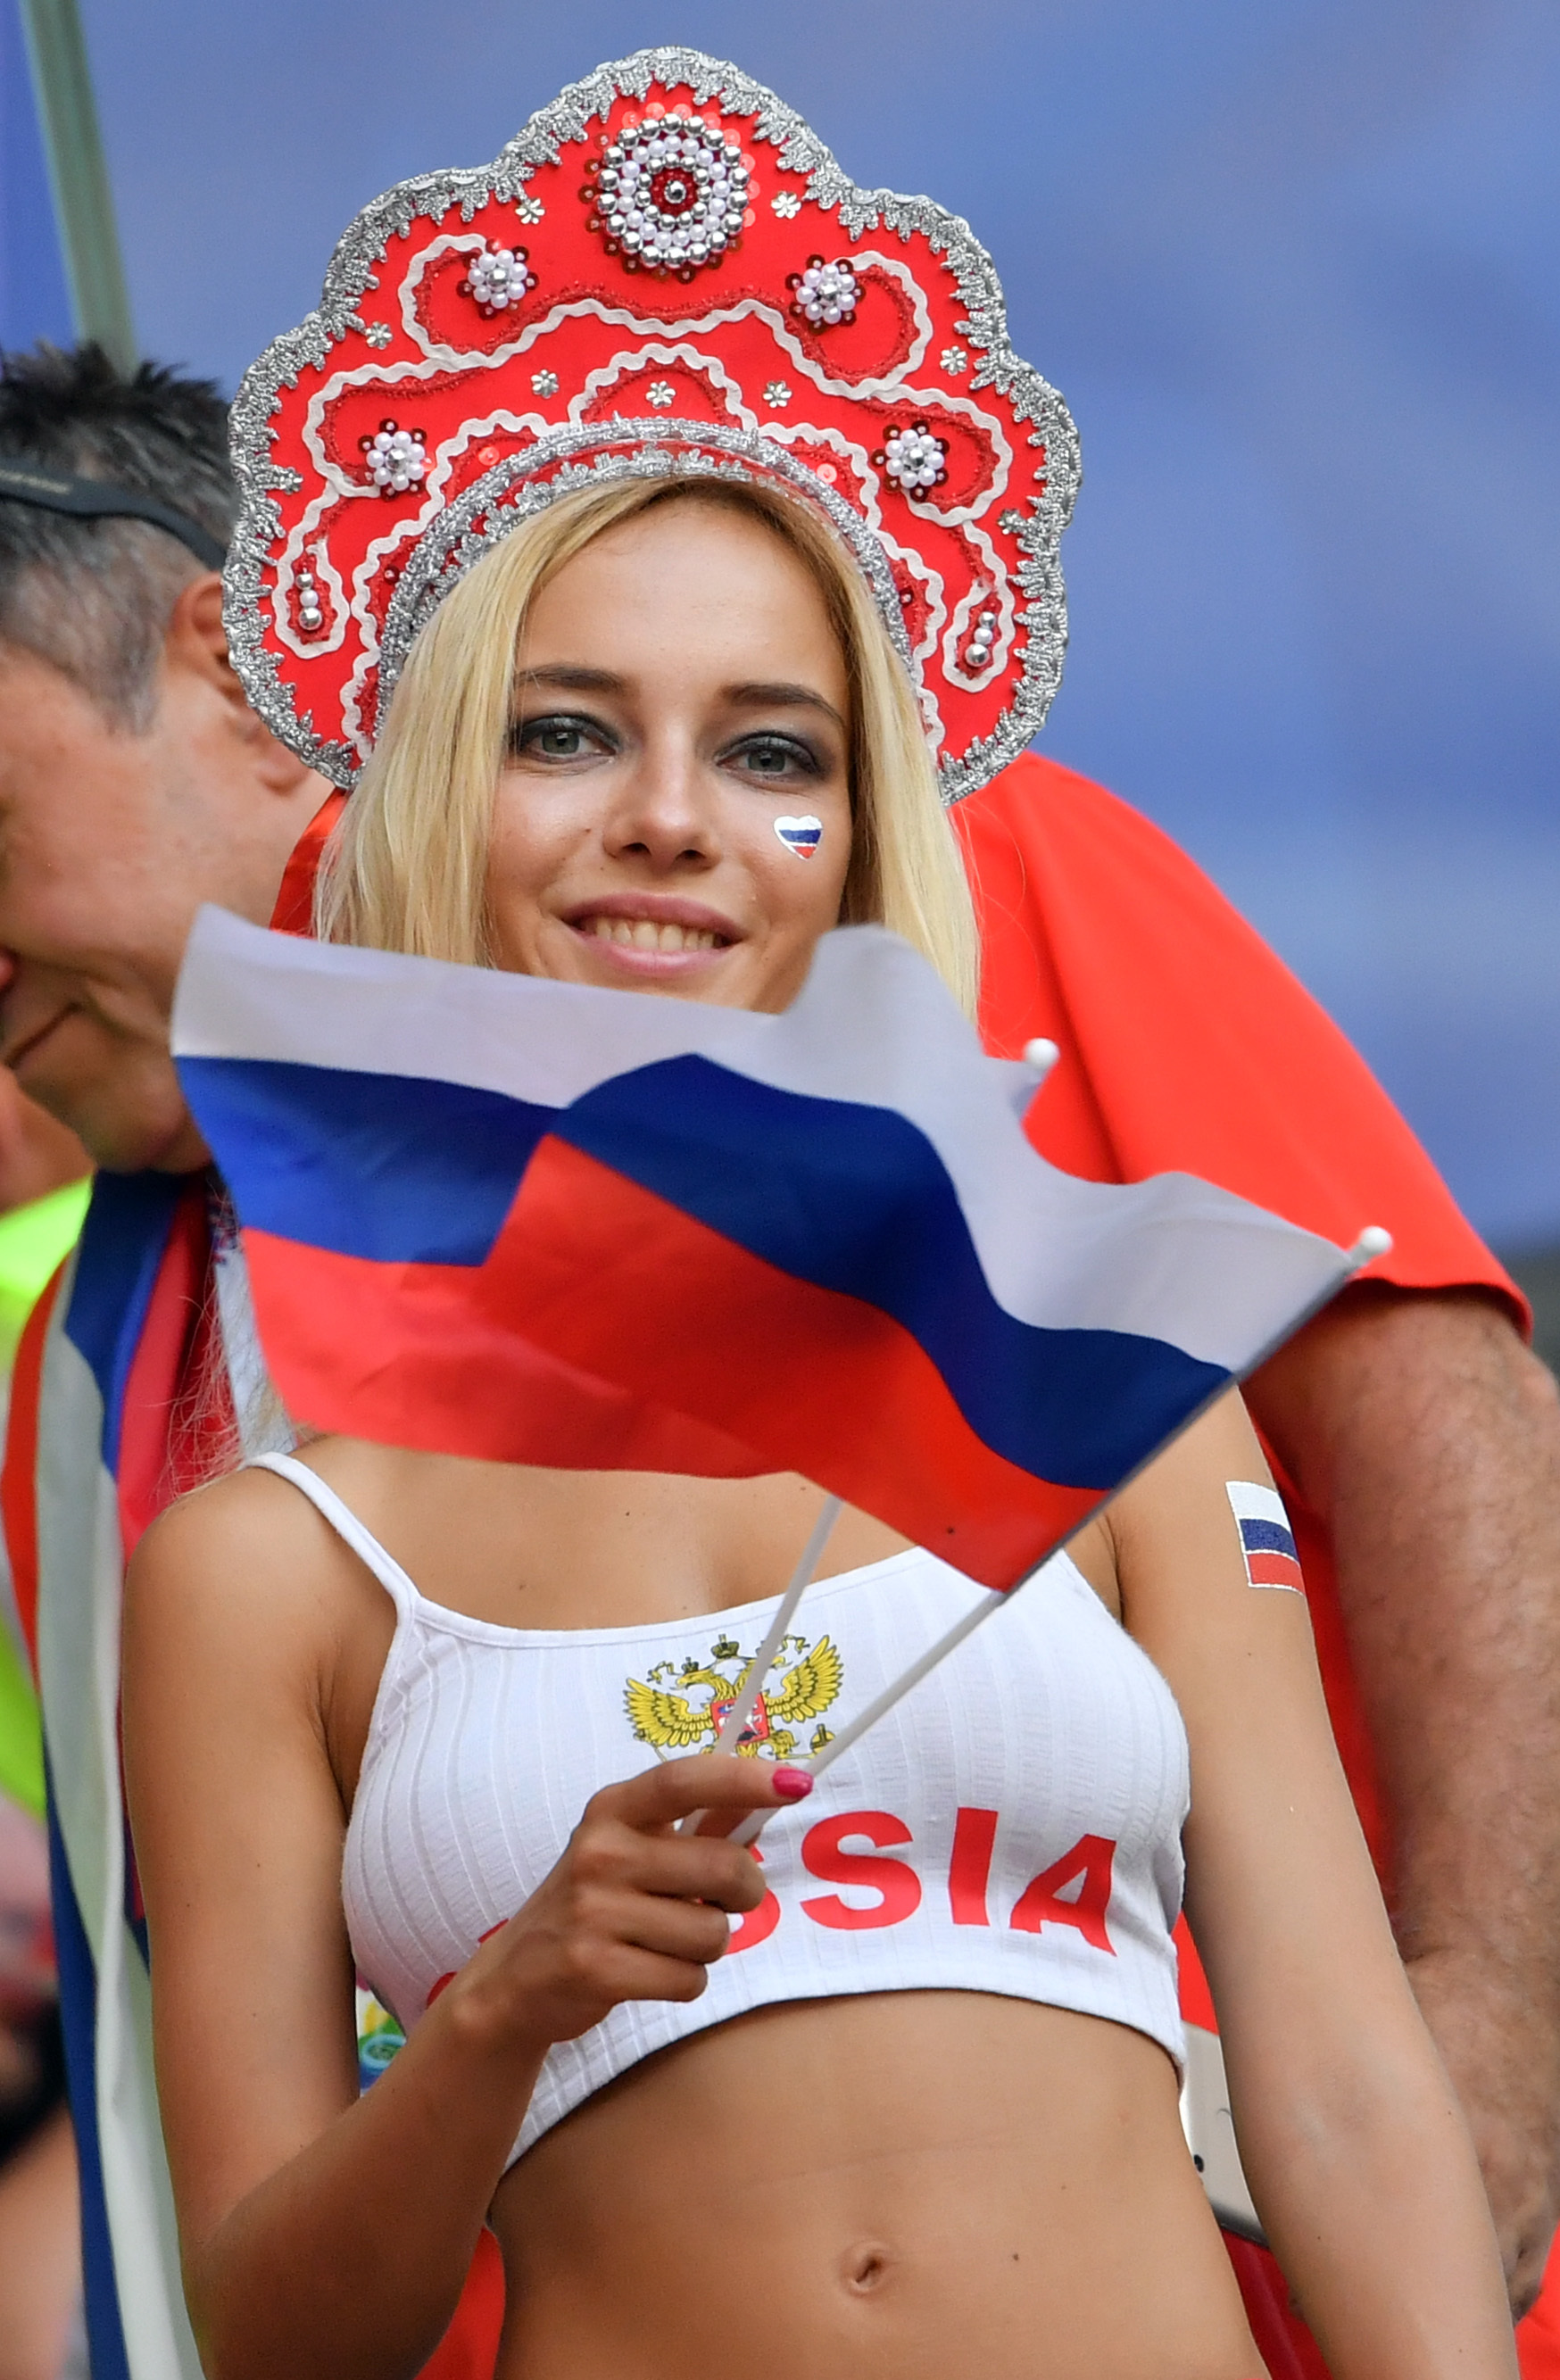 La joven responde al nombre de Natalya Nemchinova, y la gran sorpresa del  Mundial se ha producido al descubrirse que la aficionada es una reputada  actriz